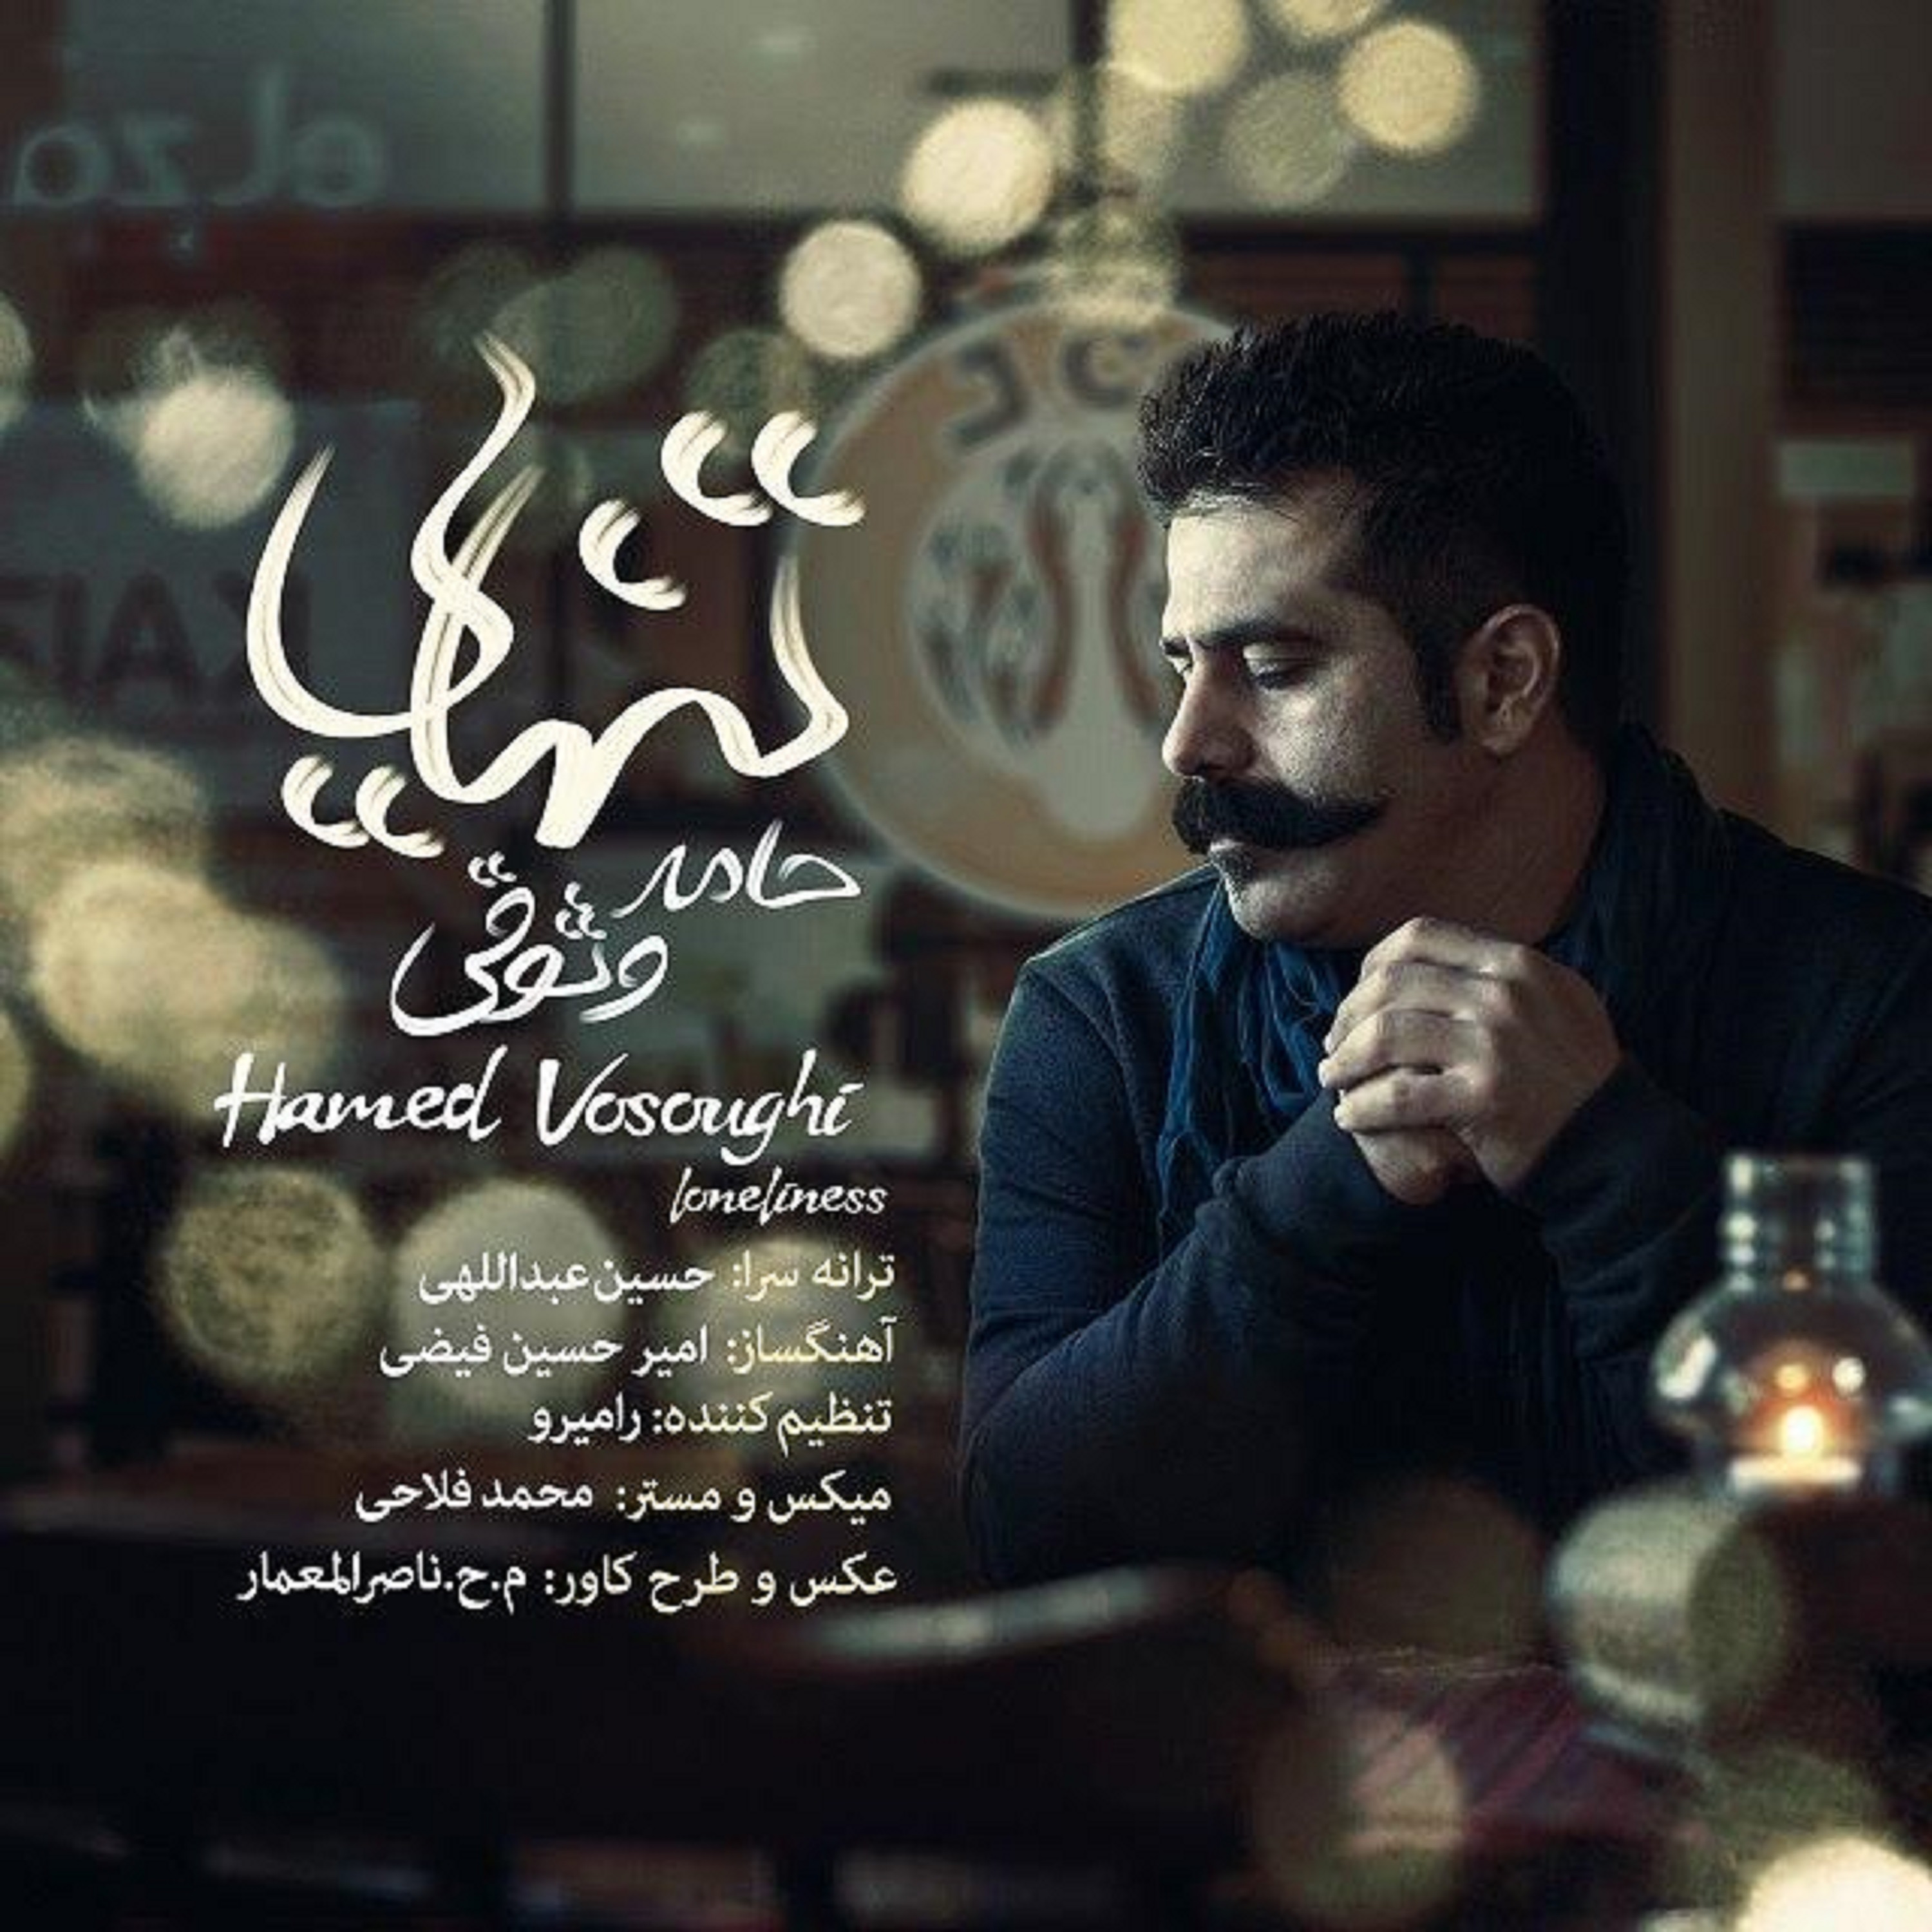  دانلود آهنگ جدید حامد وثوقی - تنهایی | Download New Music By Hamed Vosoughi - Tanhaei